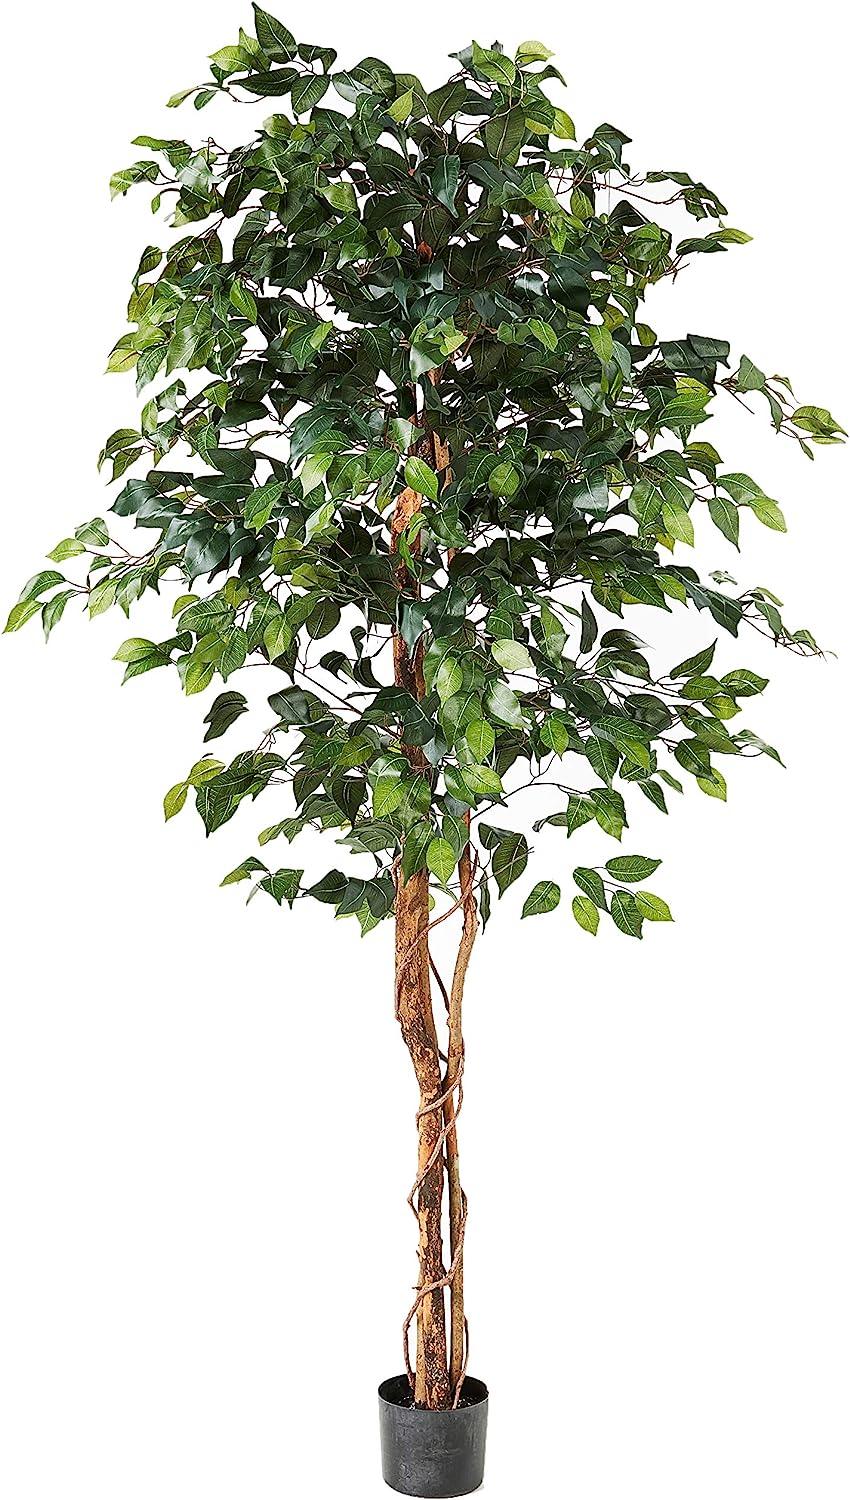 Ficus de 6 pies, árboles artificiales, 72pulgadas, verde - VIRTUAL MUEBLES